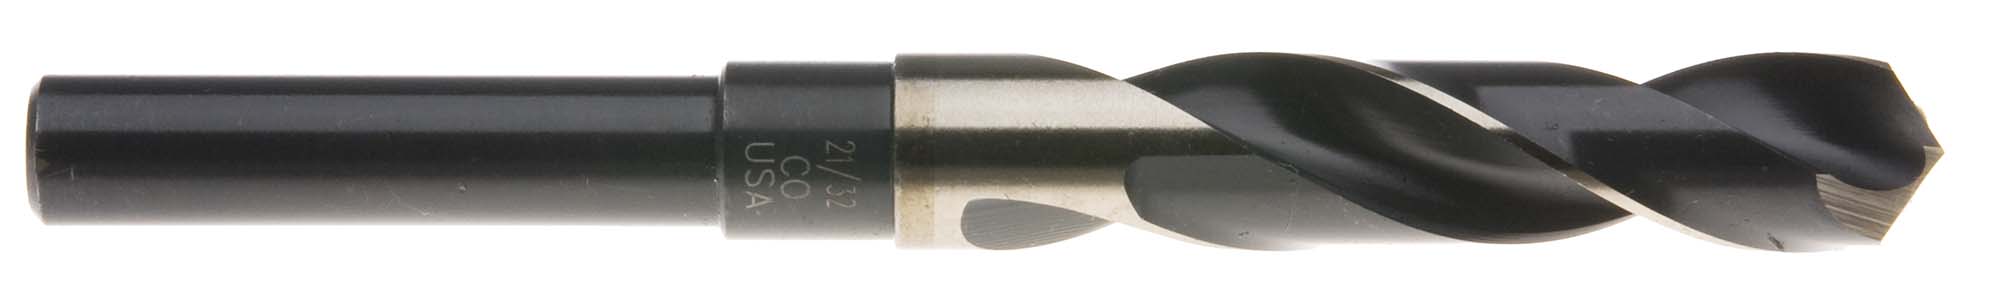 17/32" S and D Drill (1/2" shank) USA Cobalt